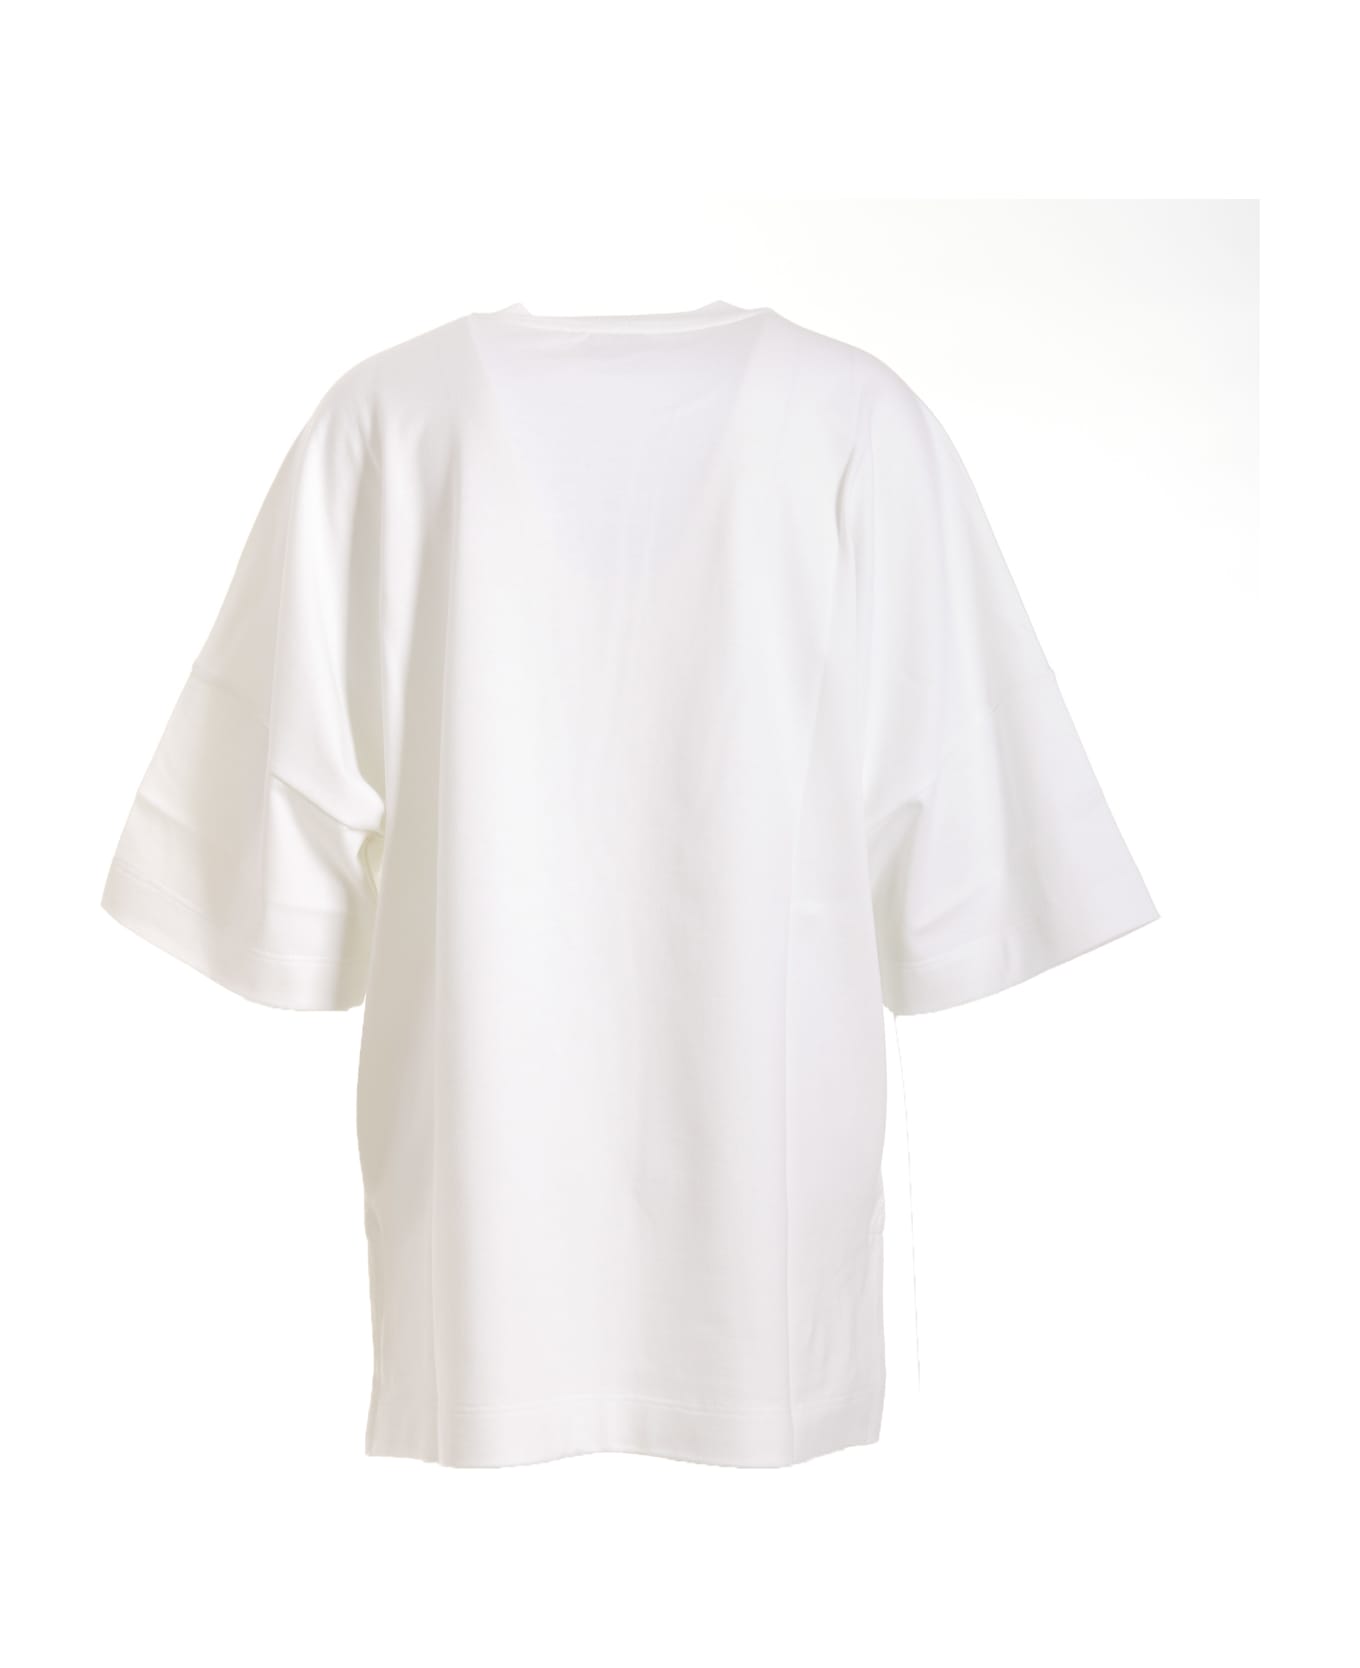 Alexander McQueen Maxi Logo T-shirt - White Tシャツ